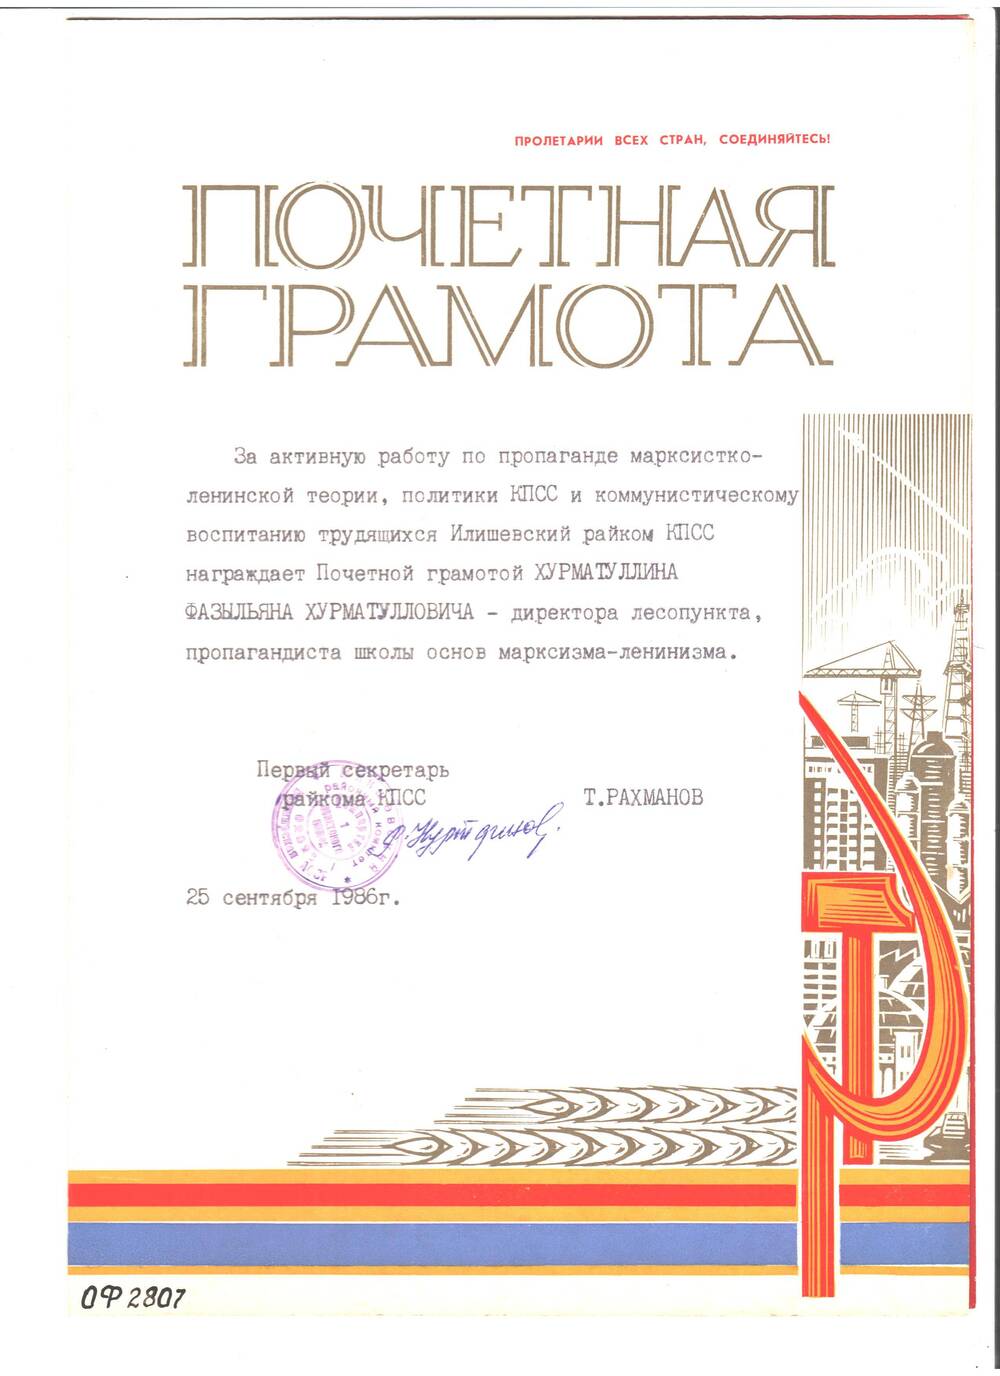 Грамота — почетная Илишевского райкома КПСС нагр.Хурматуллина Ф.Х.от 25 сентября 1986 года. Обложка красного цвета с изображением знамени с орденом.